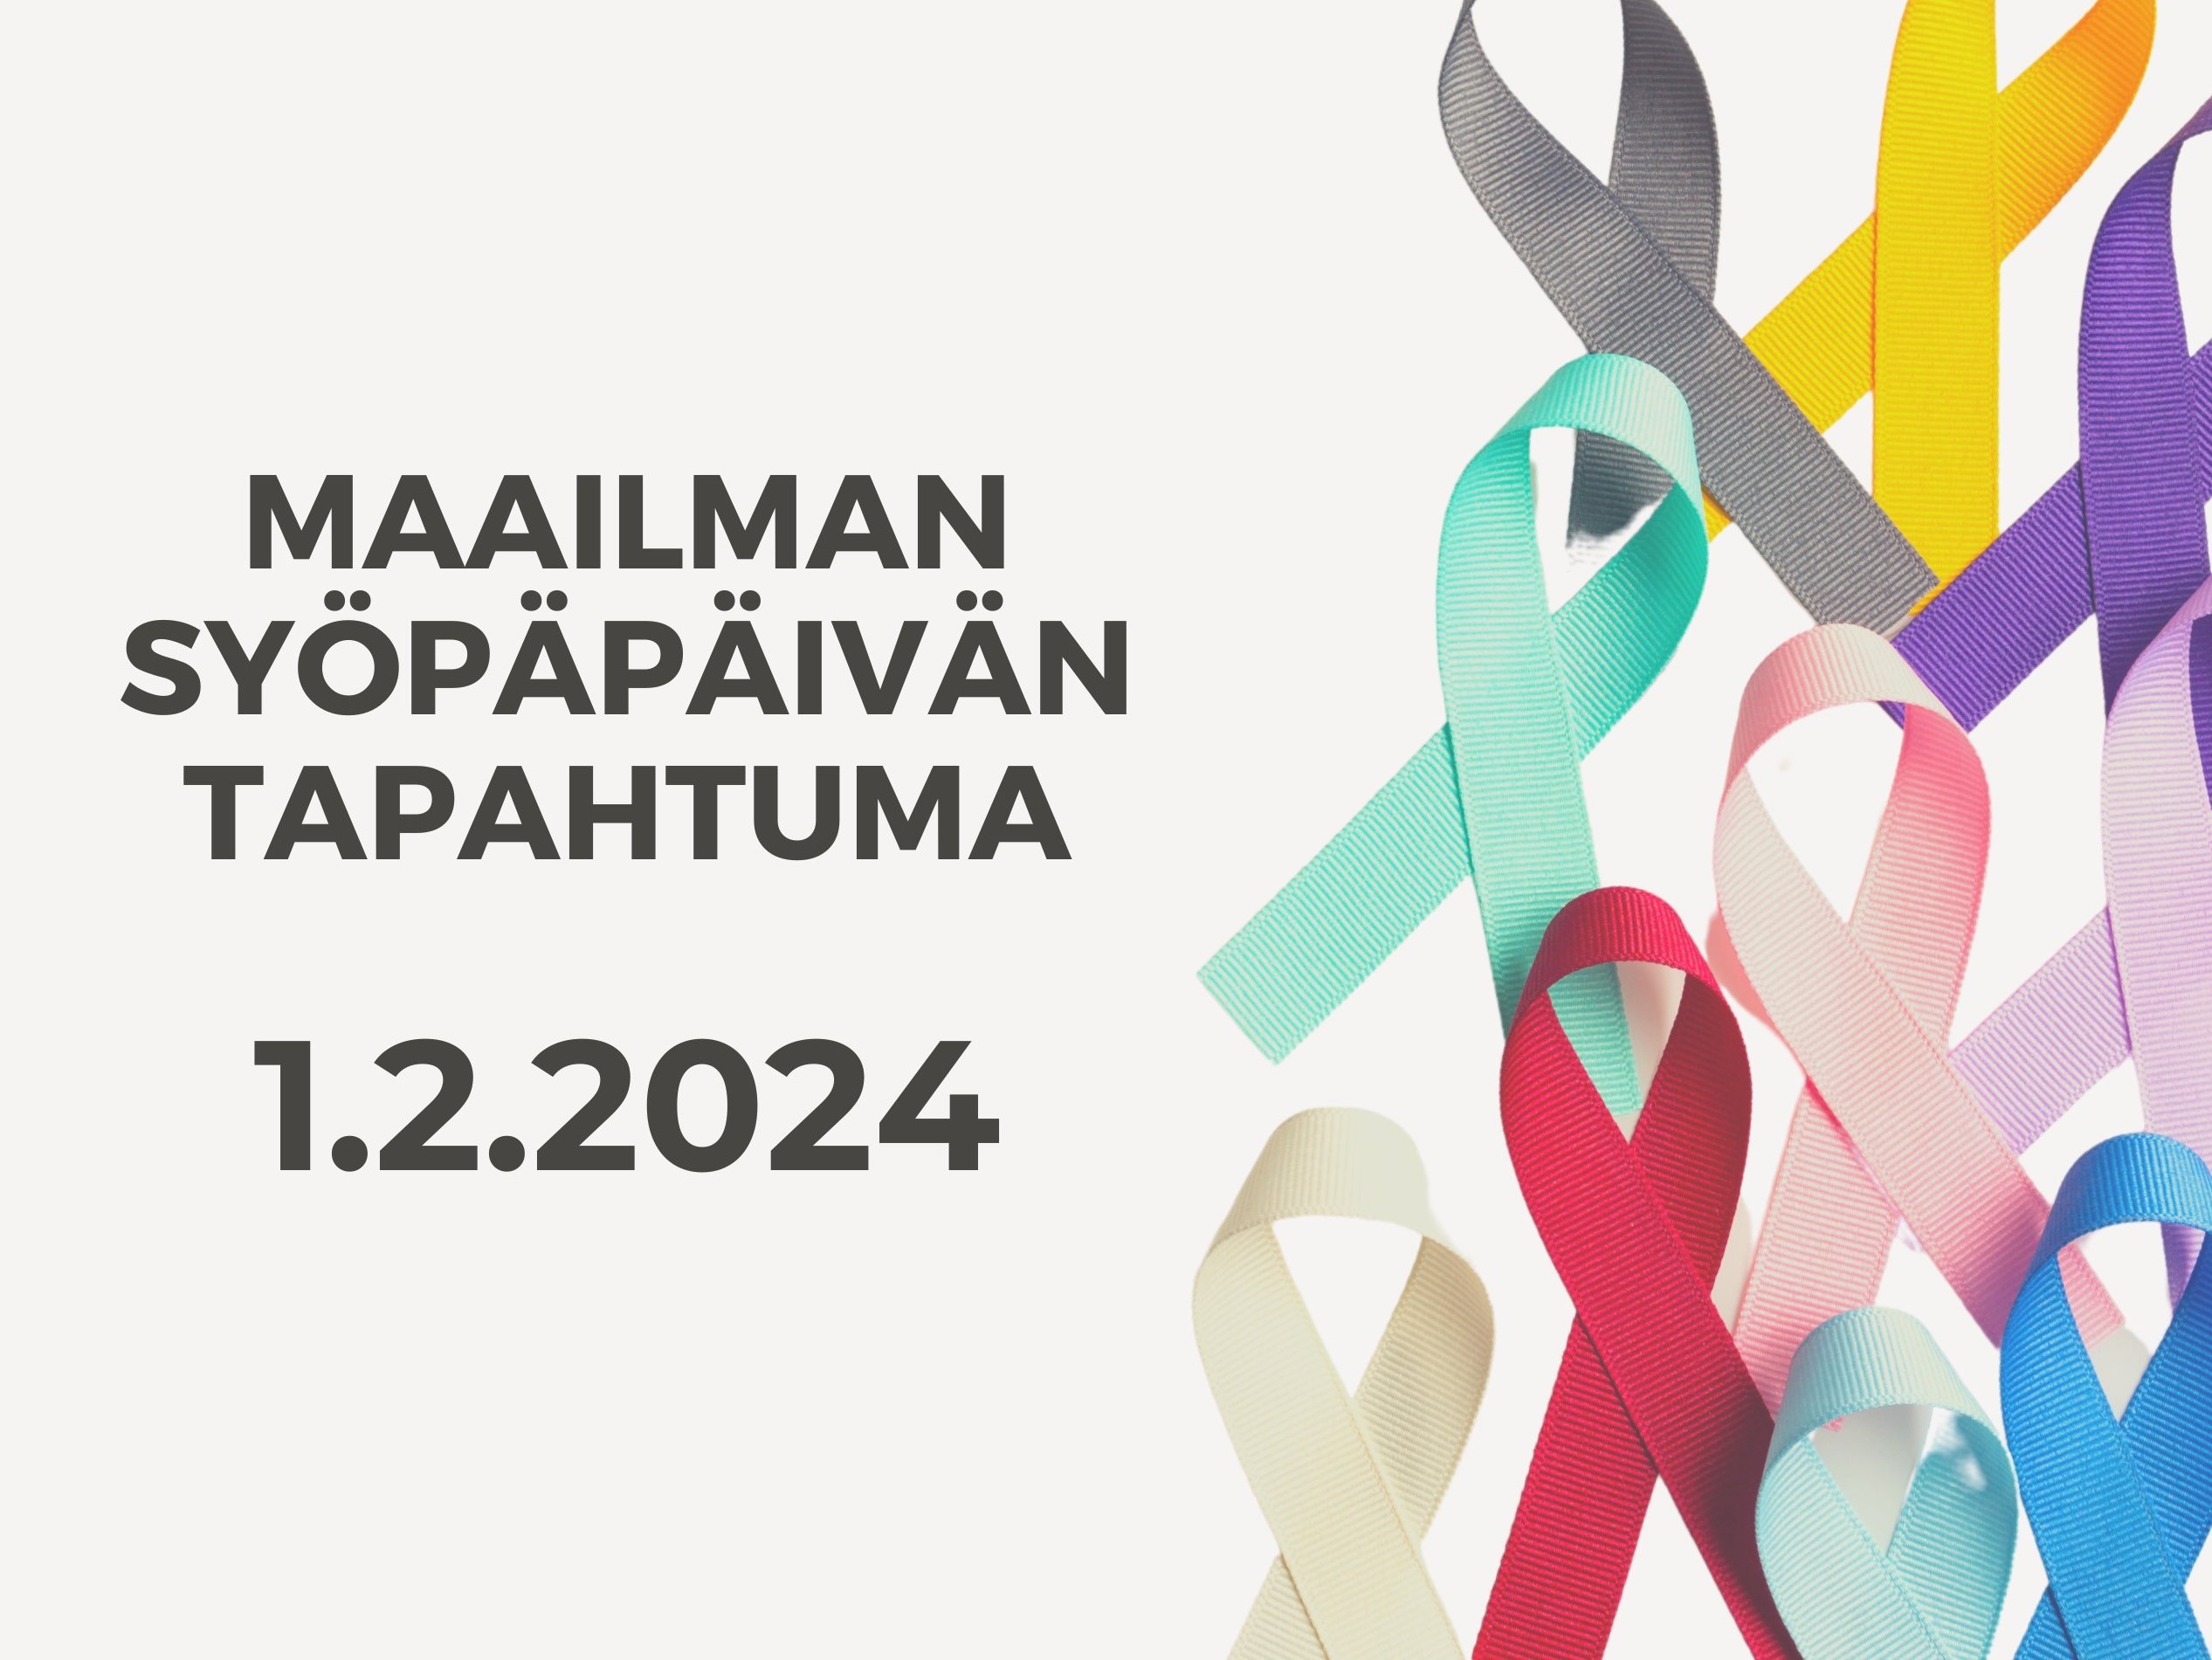 Maailman syöpäpäivän tapahtuma 1.2.2024